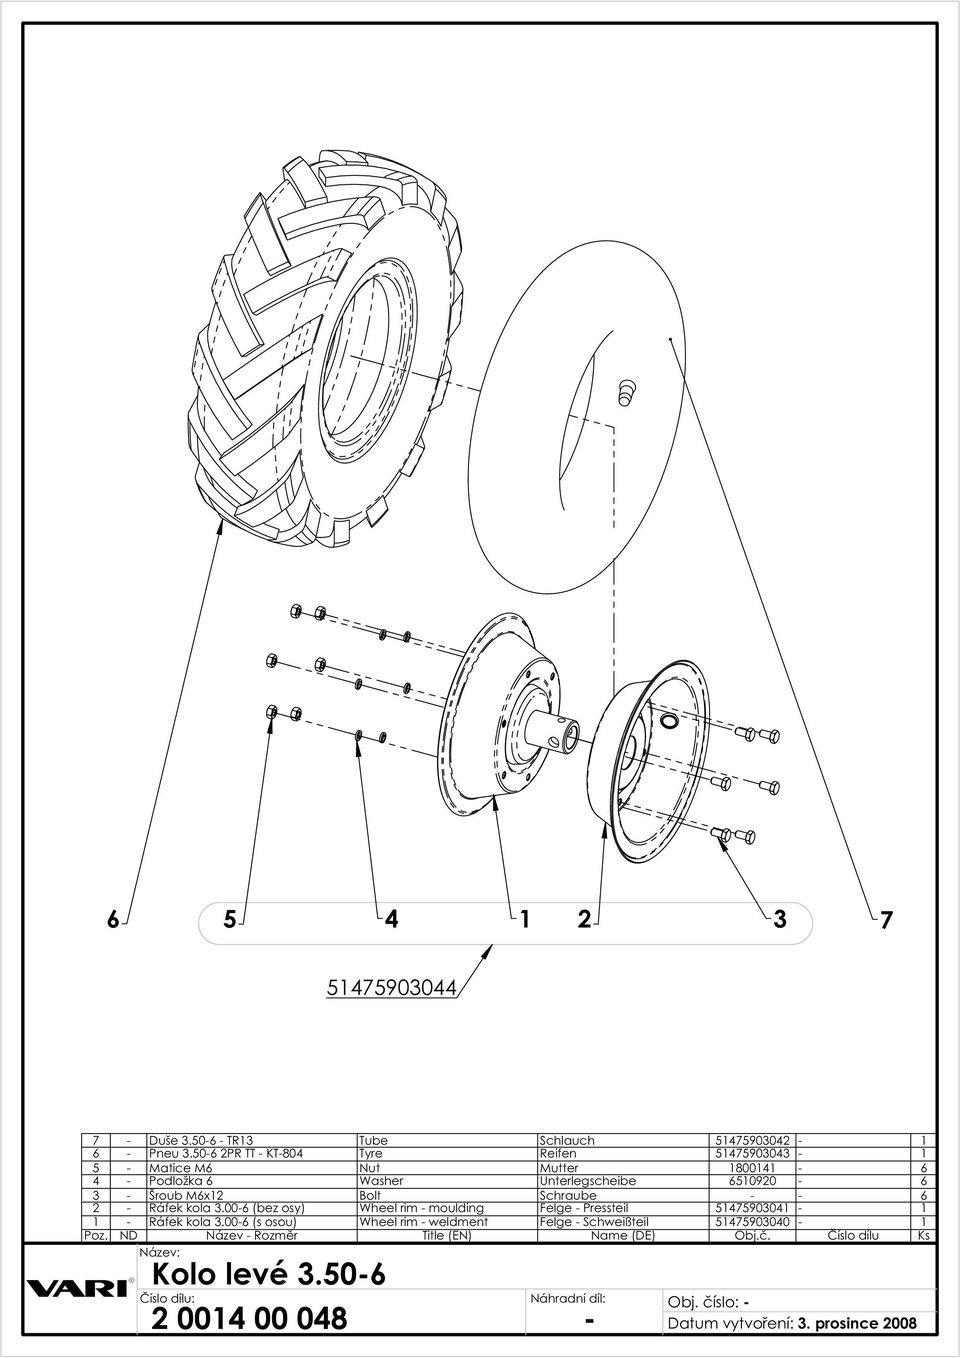 Mx Bolt Schraube - - - áfek kola.00- (bez osy) Wheel rim - moulding Felge - Pressteil 00 - - áfek kola.